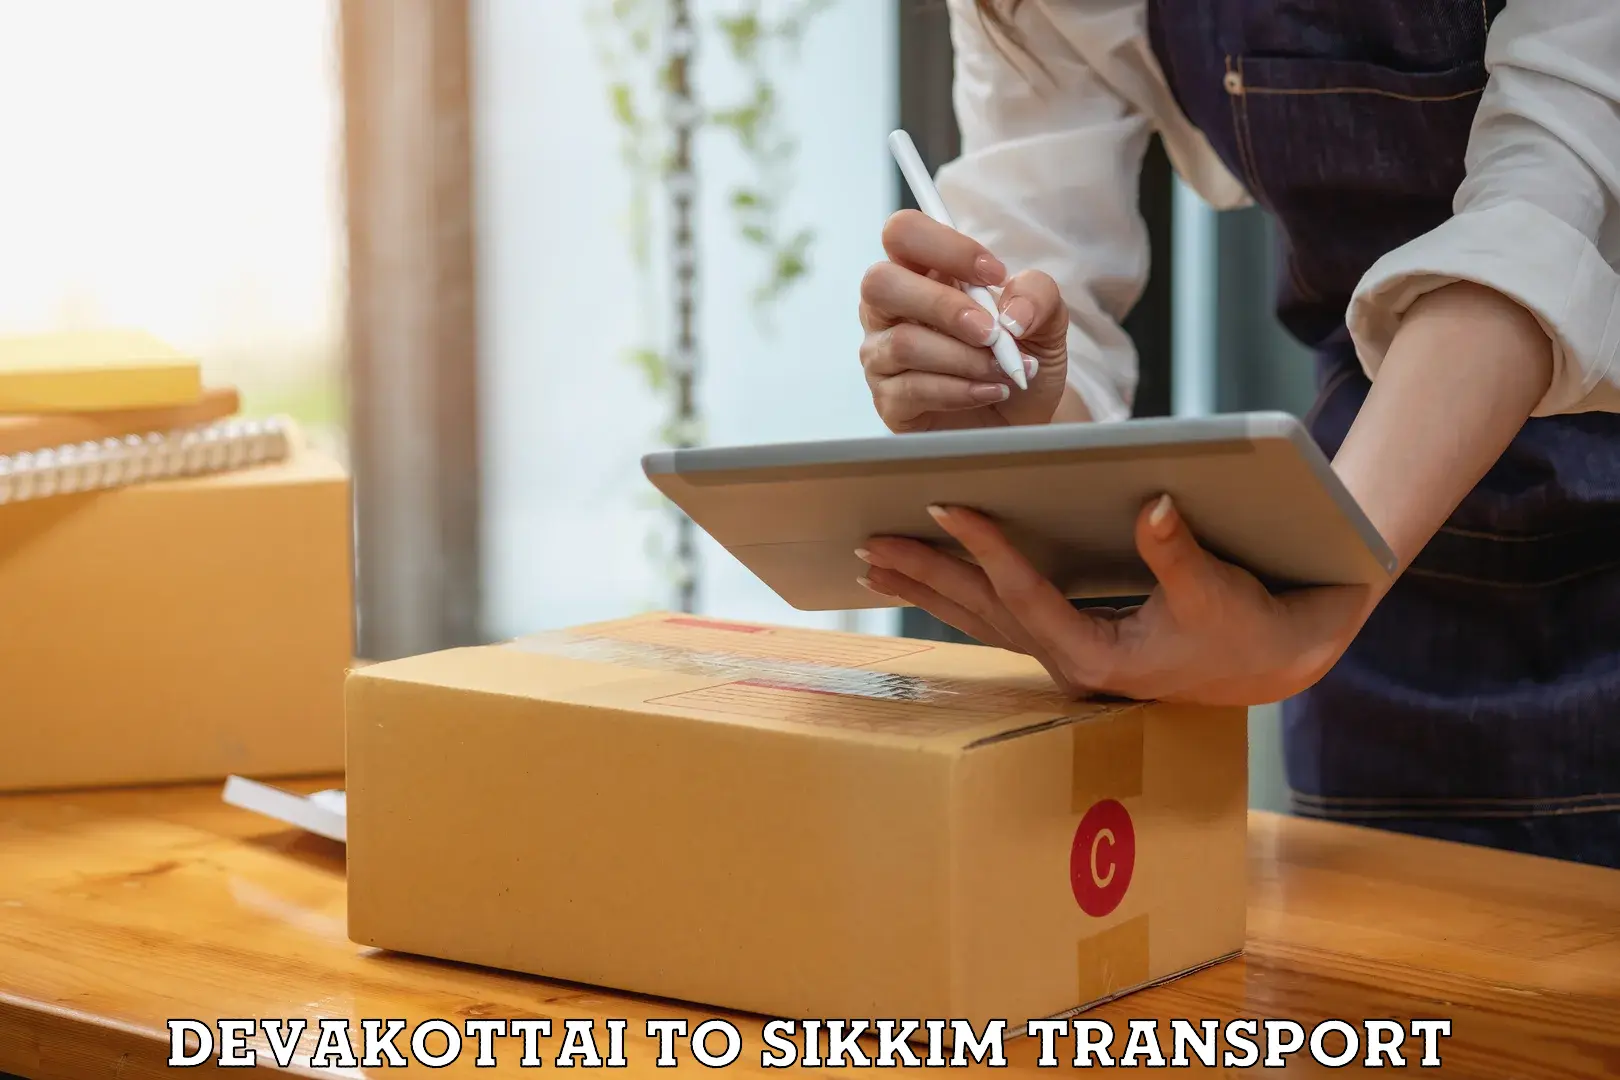 Nationwide transport services Devakottai to East Sikkim